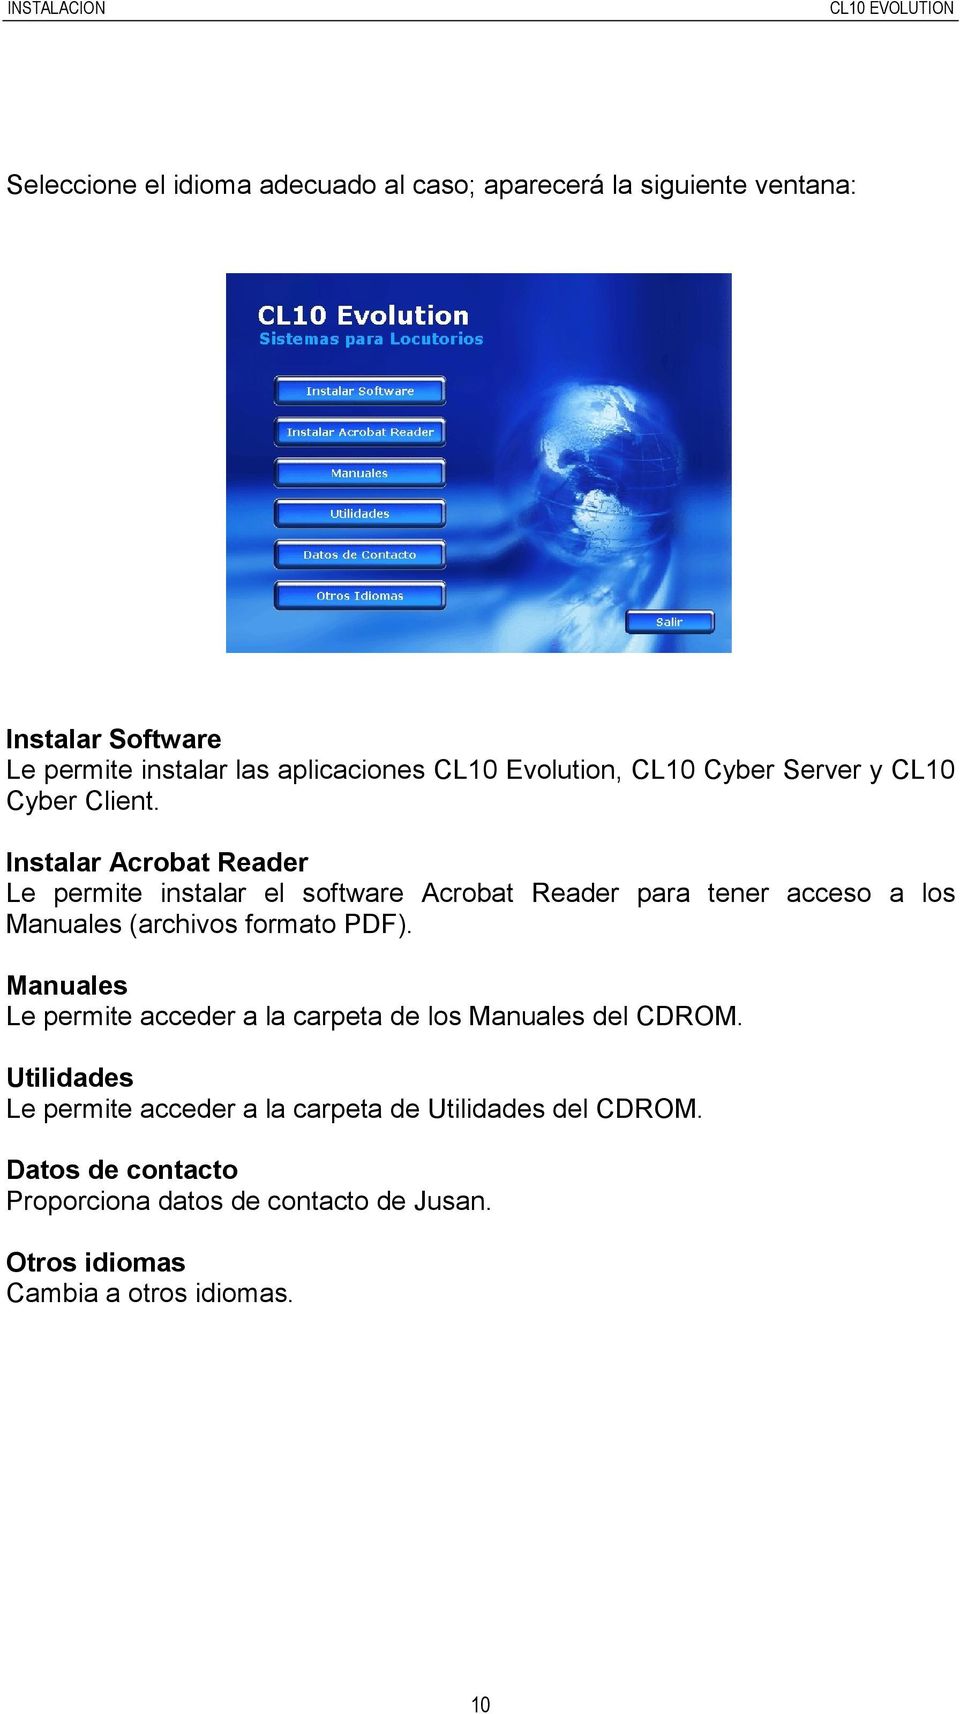 Instalar Acrobat Reader Le permite instalar el software Acrobat Reader para tener acceso a los Manuales (archivos formato PDF).